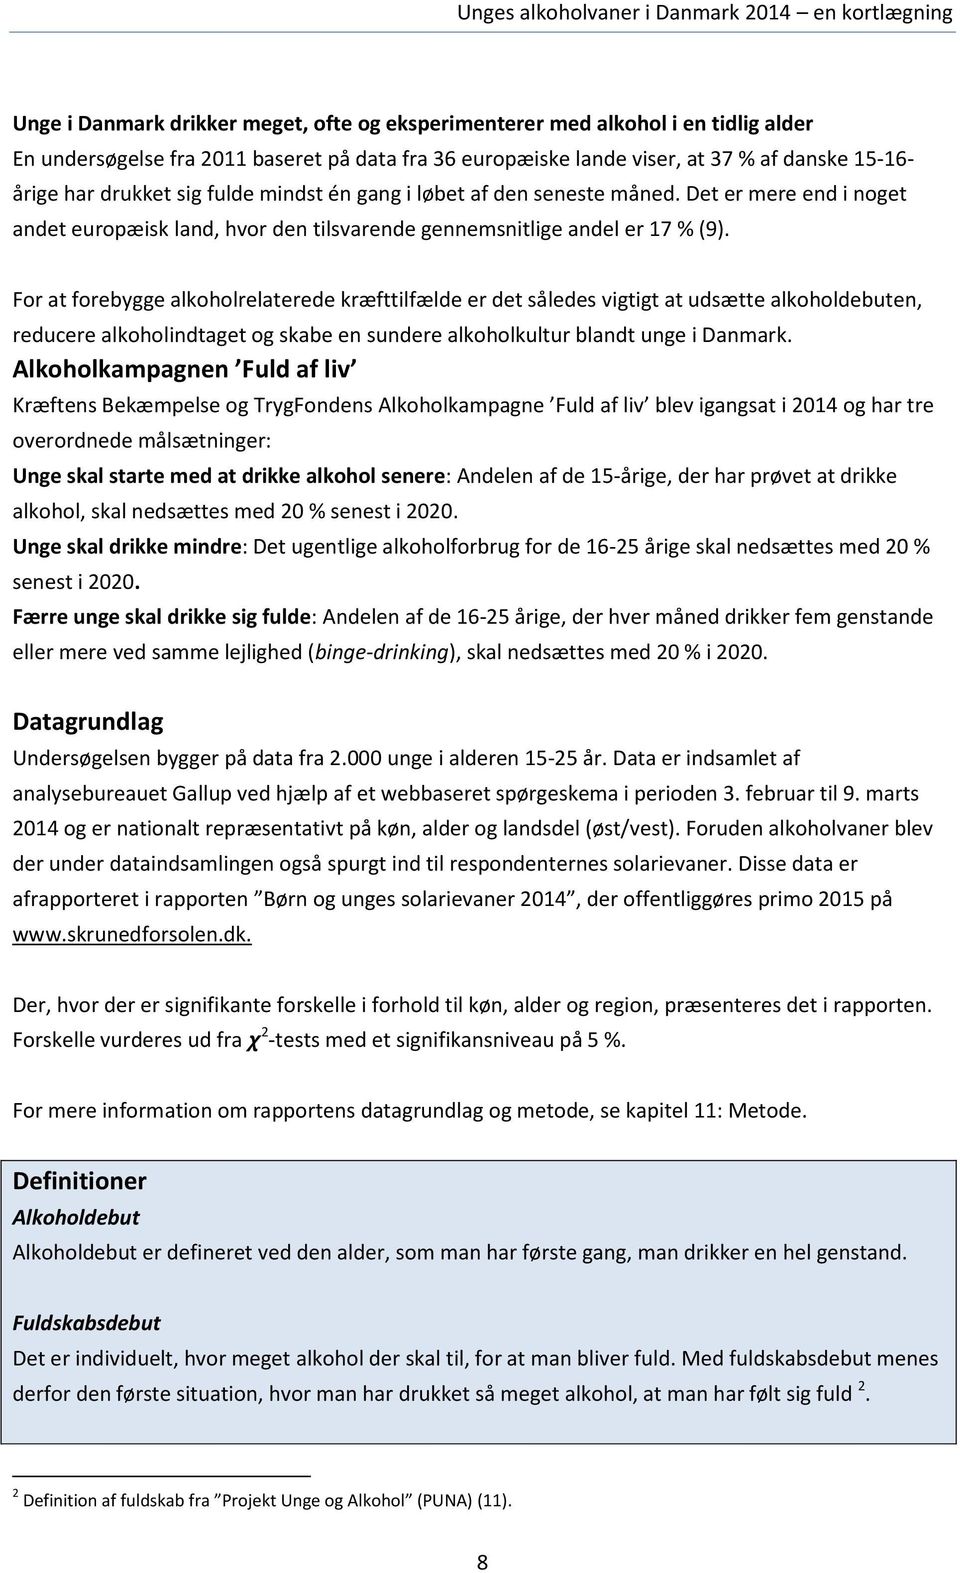 For at forebygge alkoholrelaterede kræfttilfælde er det således vigtigt at udsætte alkoholdebuten, reducere alkoholindtaget og skabe en sundere alkoholkultur blandt unge i Danmark.